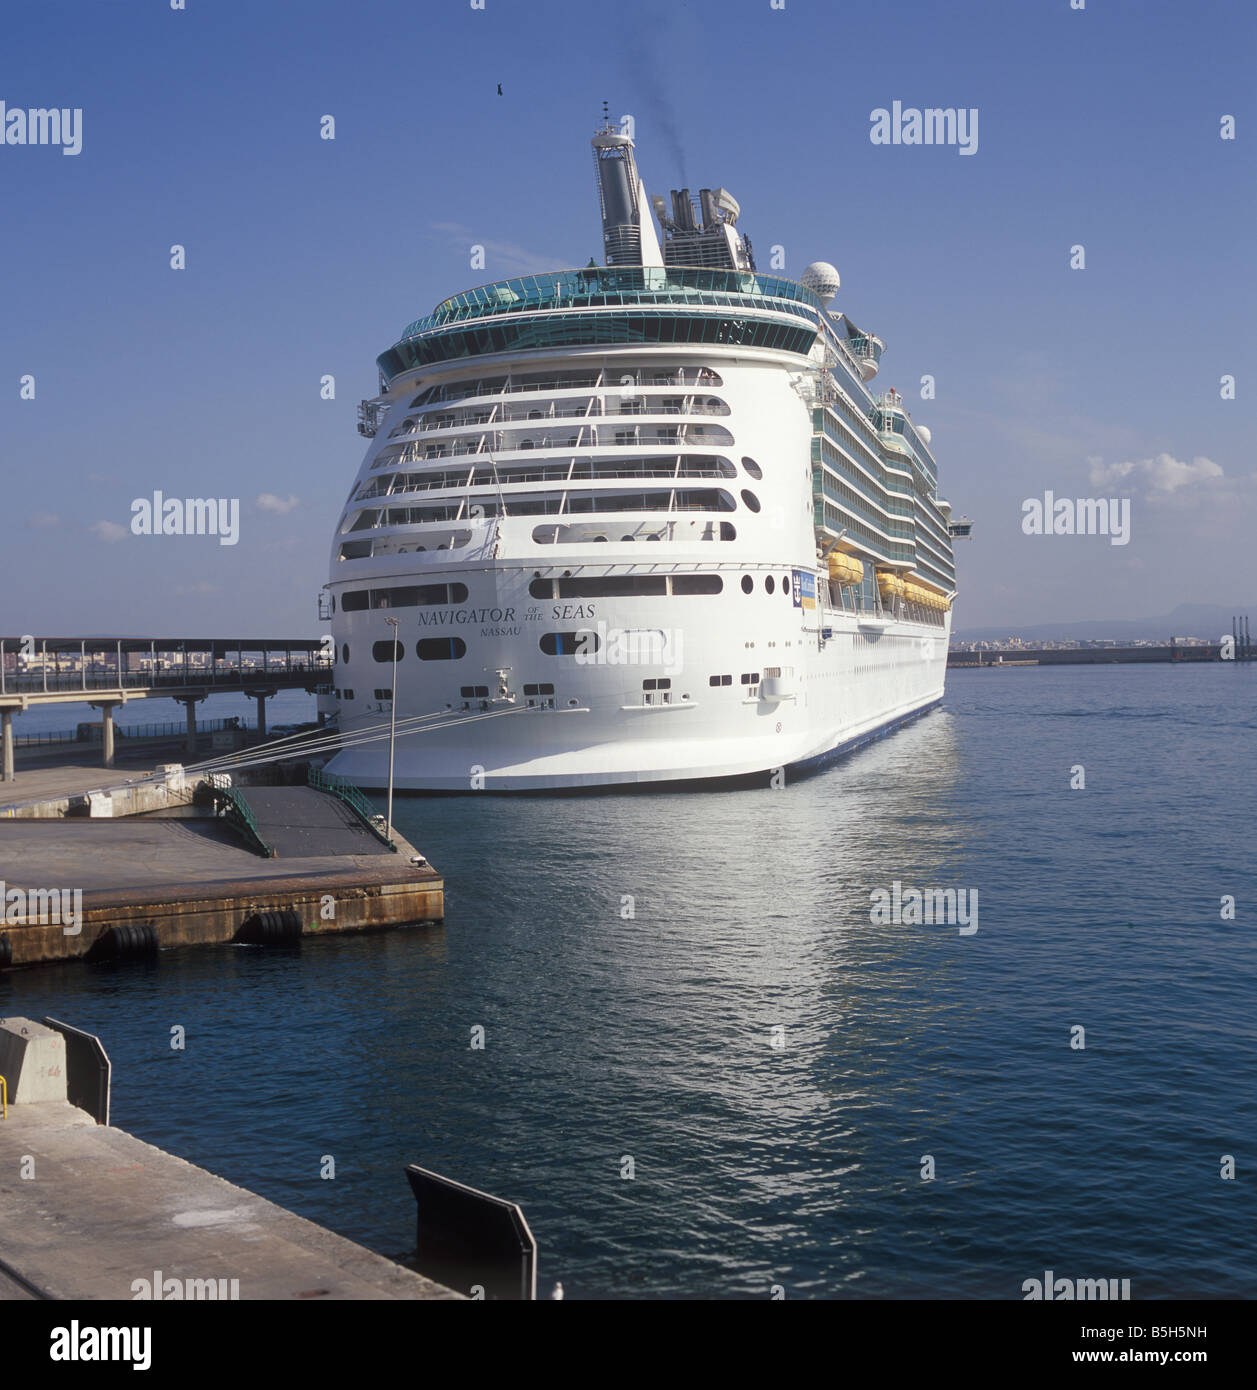 Royal Caribbean International Crucero "navegante de los Mares" ( 311 metros  ) en el puerto de Palma de Mallorca Fotografía de stock - Alamy